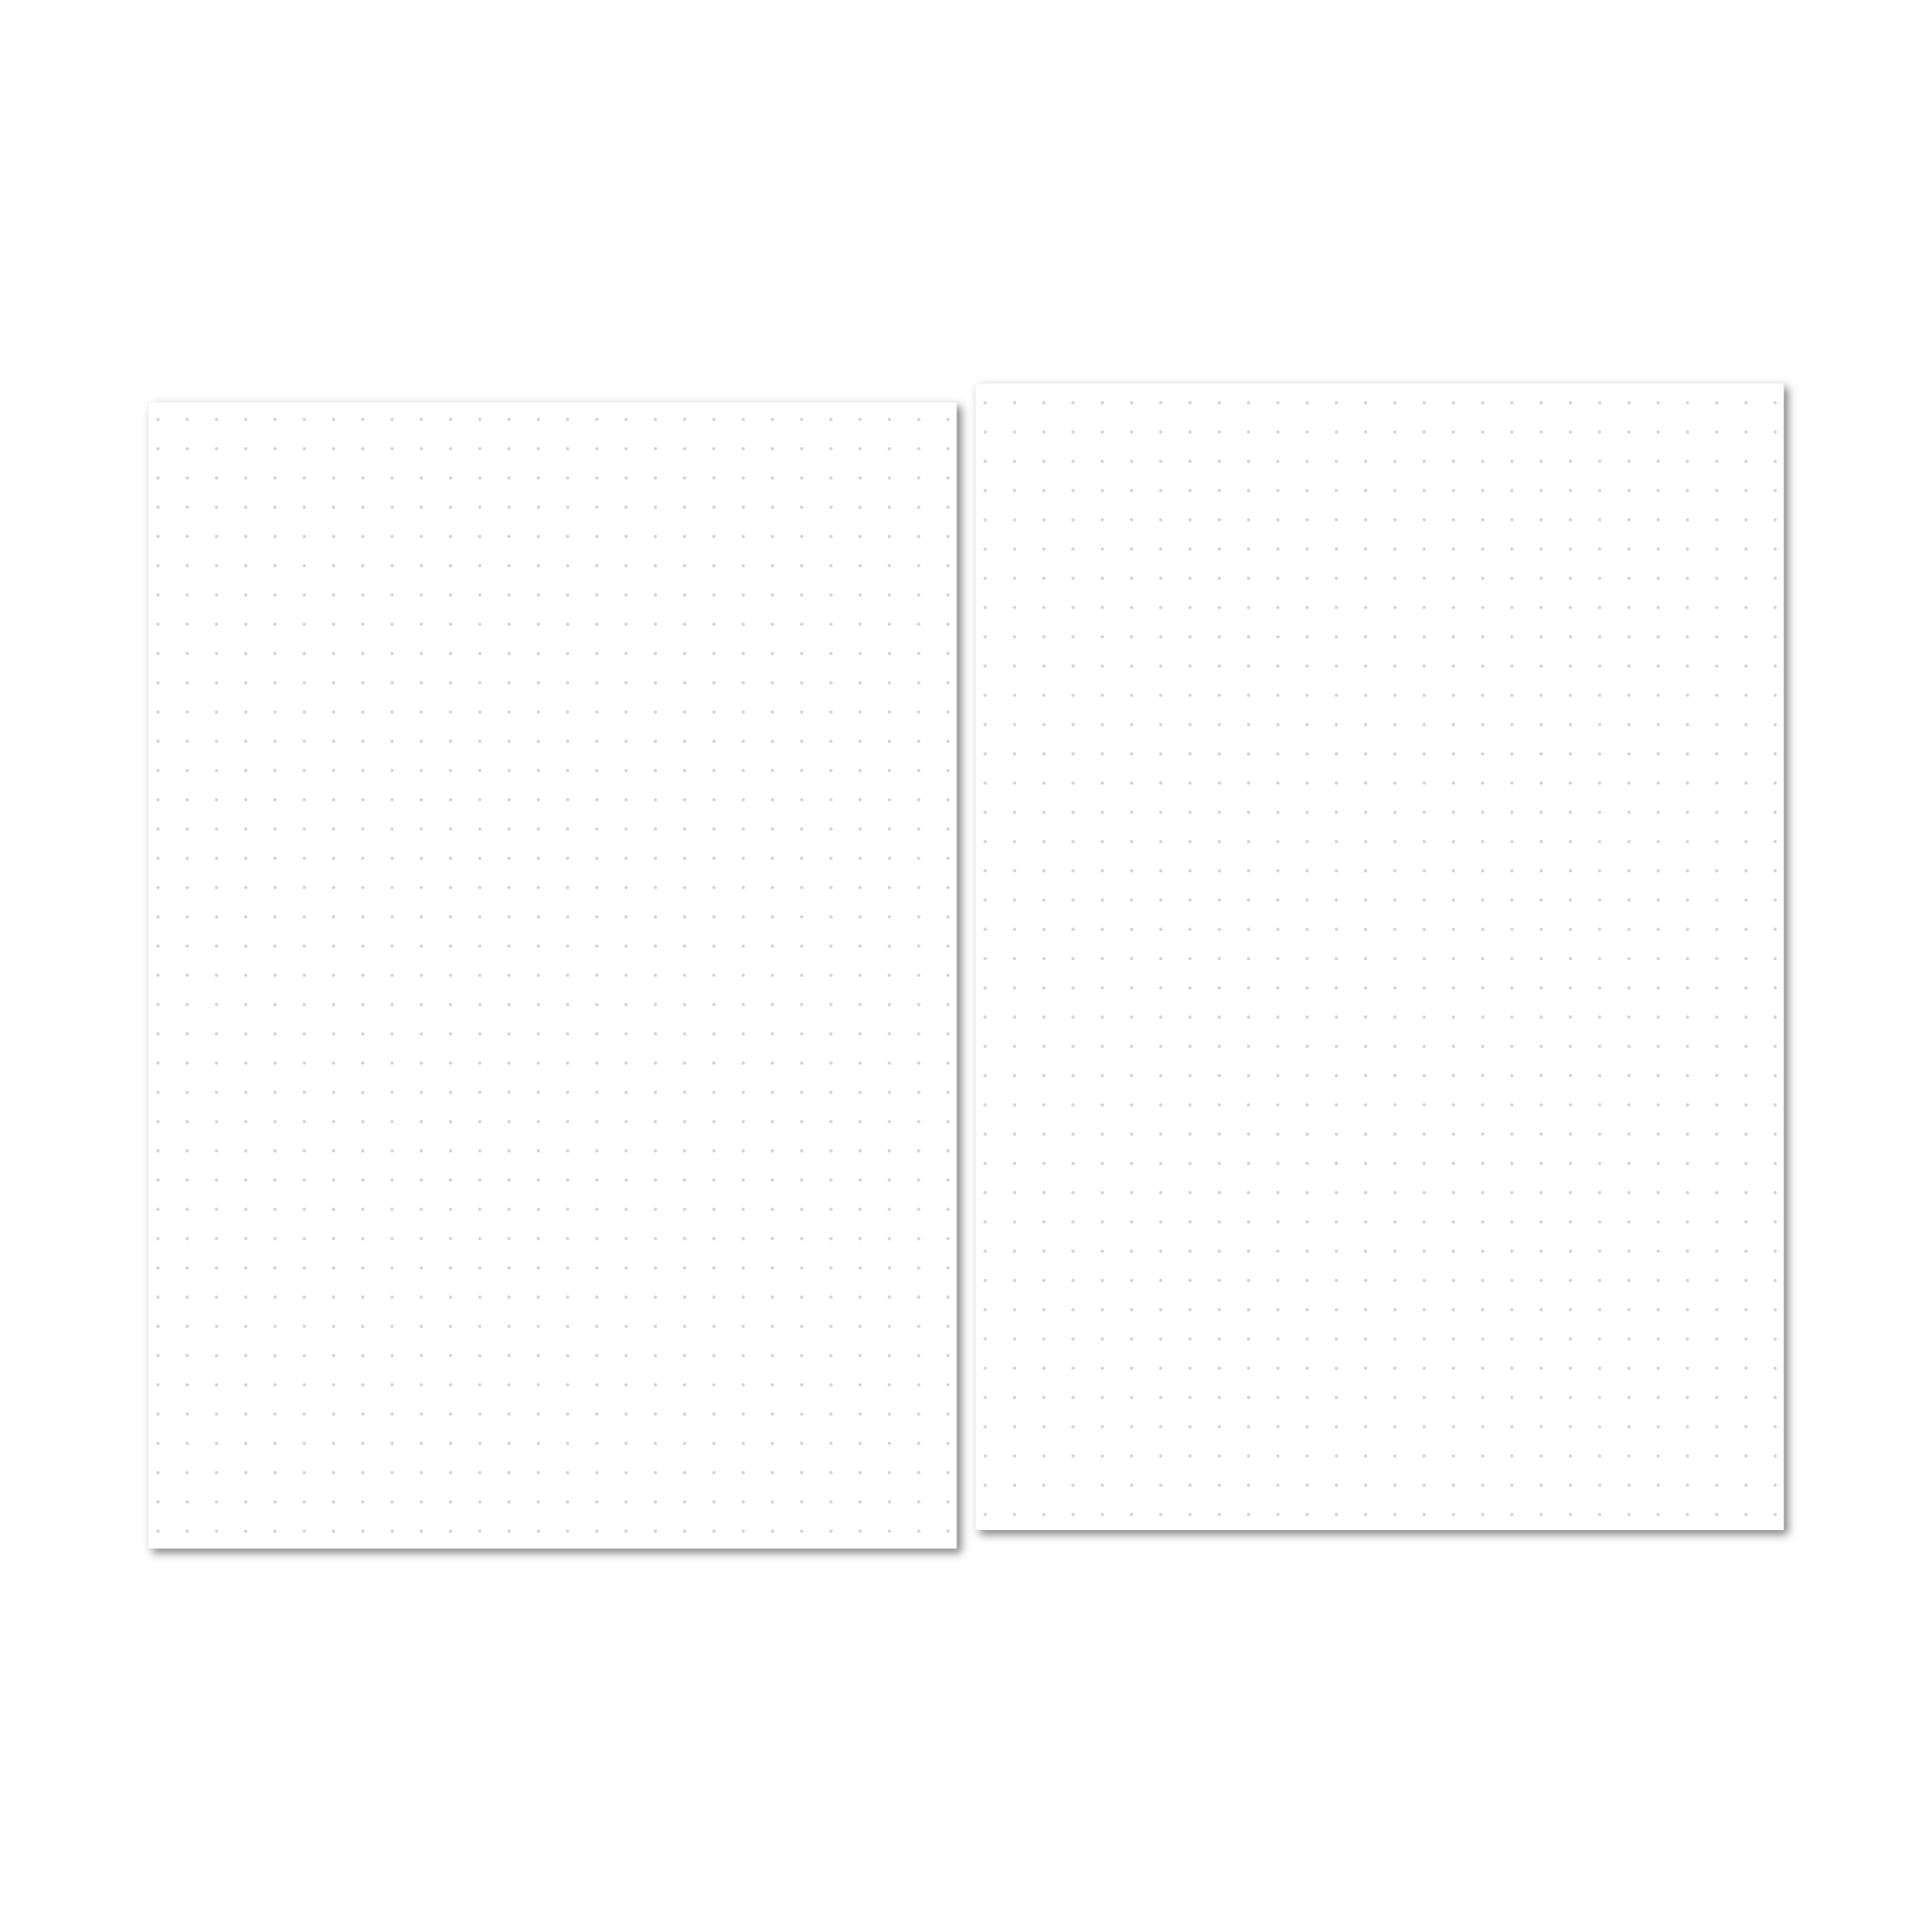 Dot grid graph paper